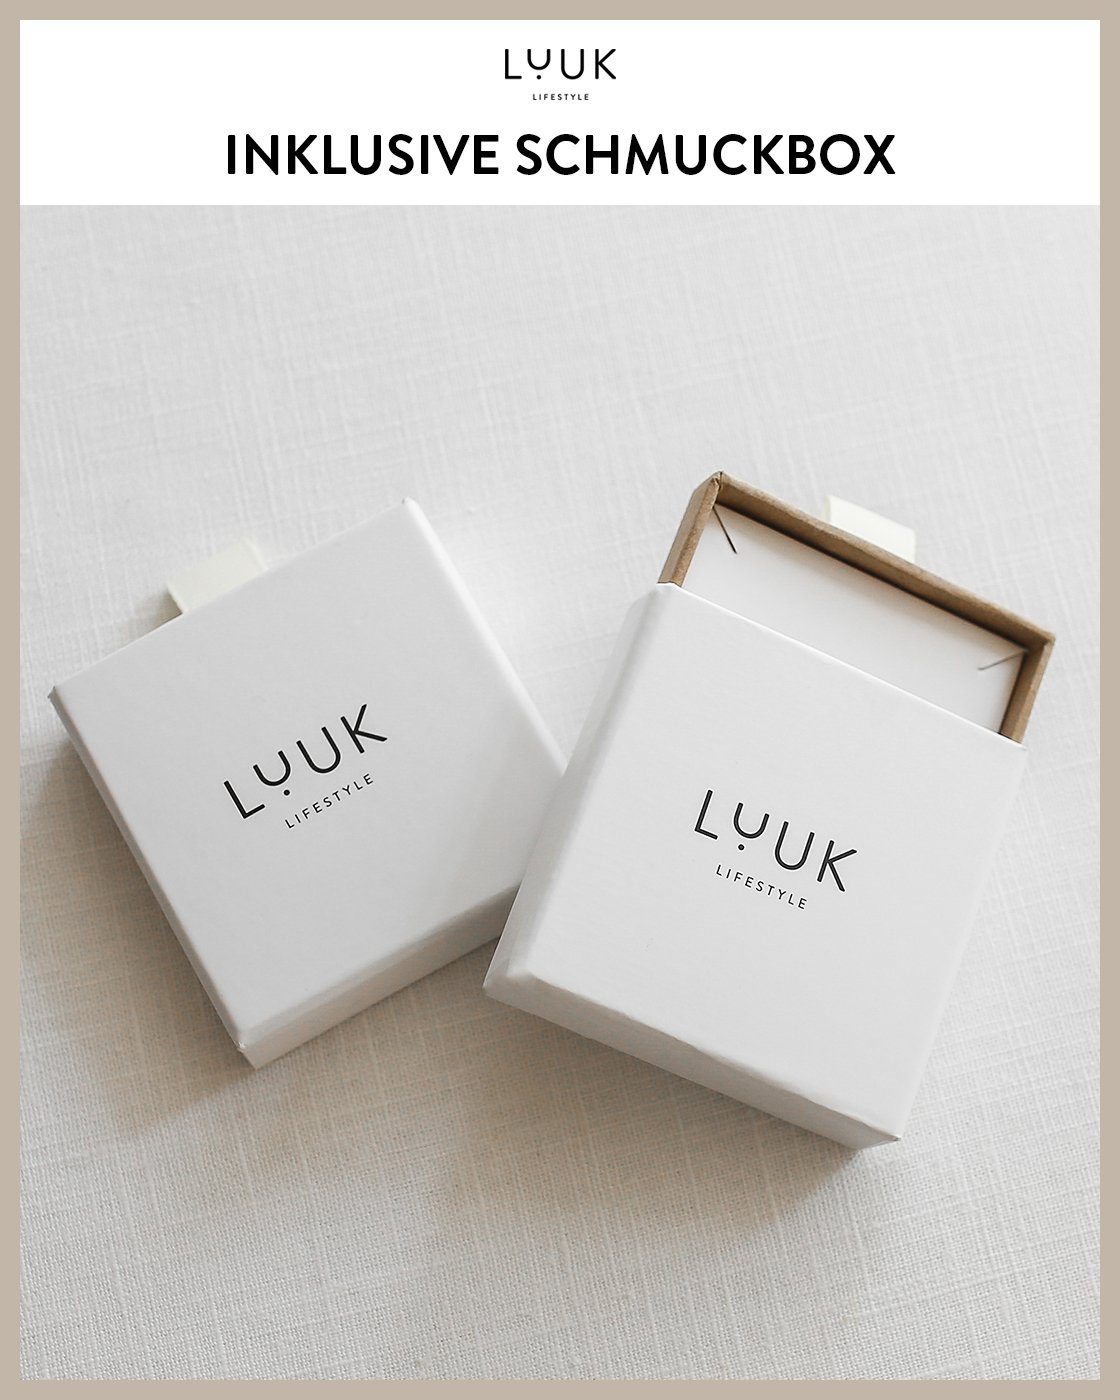 Gold Ohrstecker LUUK LIFESTYLE & Paar Schmuckbox Design, modernes inklusive Oval, hautverträglich, wasserfest alltagstauglich, schöner